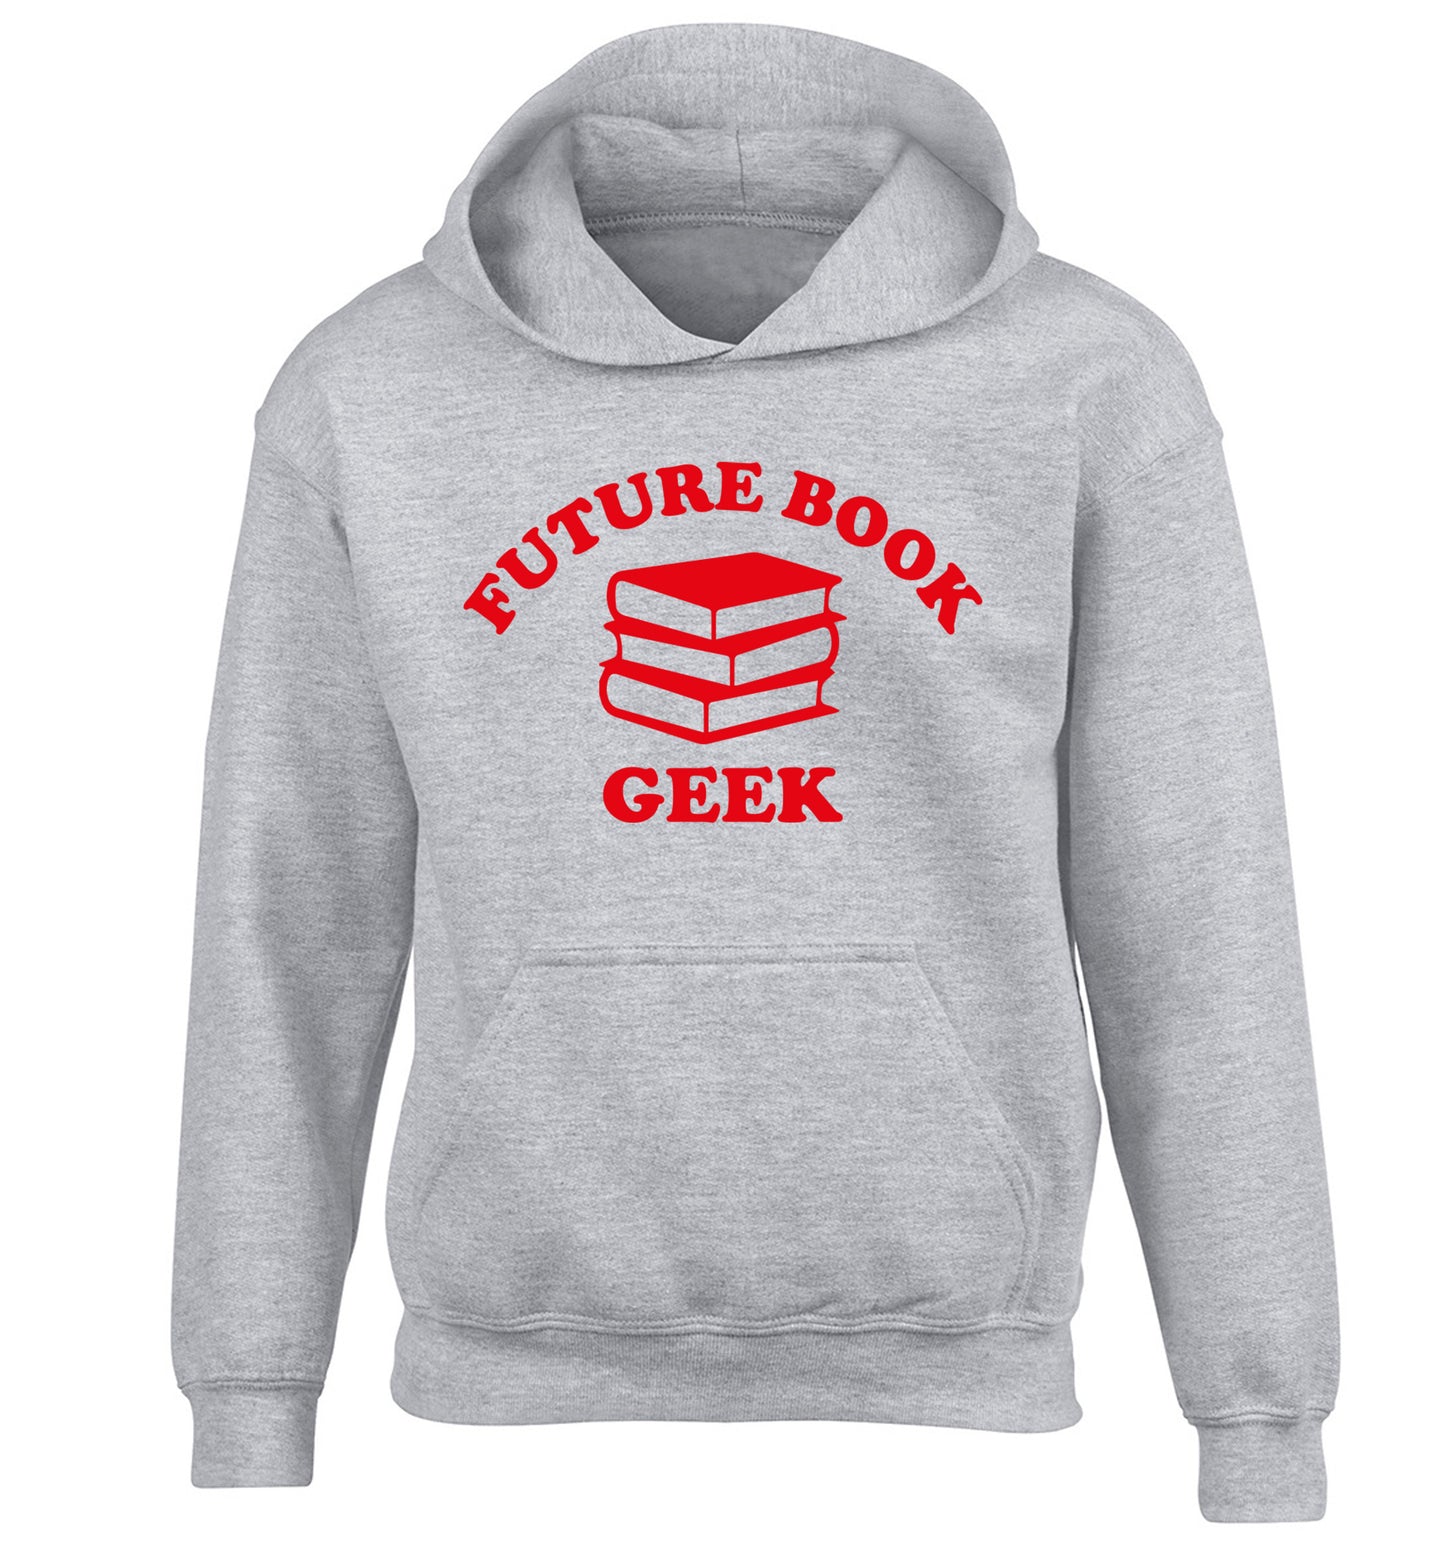 Future book geek children's grey hoodie 12-14 Years